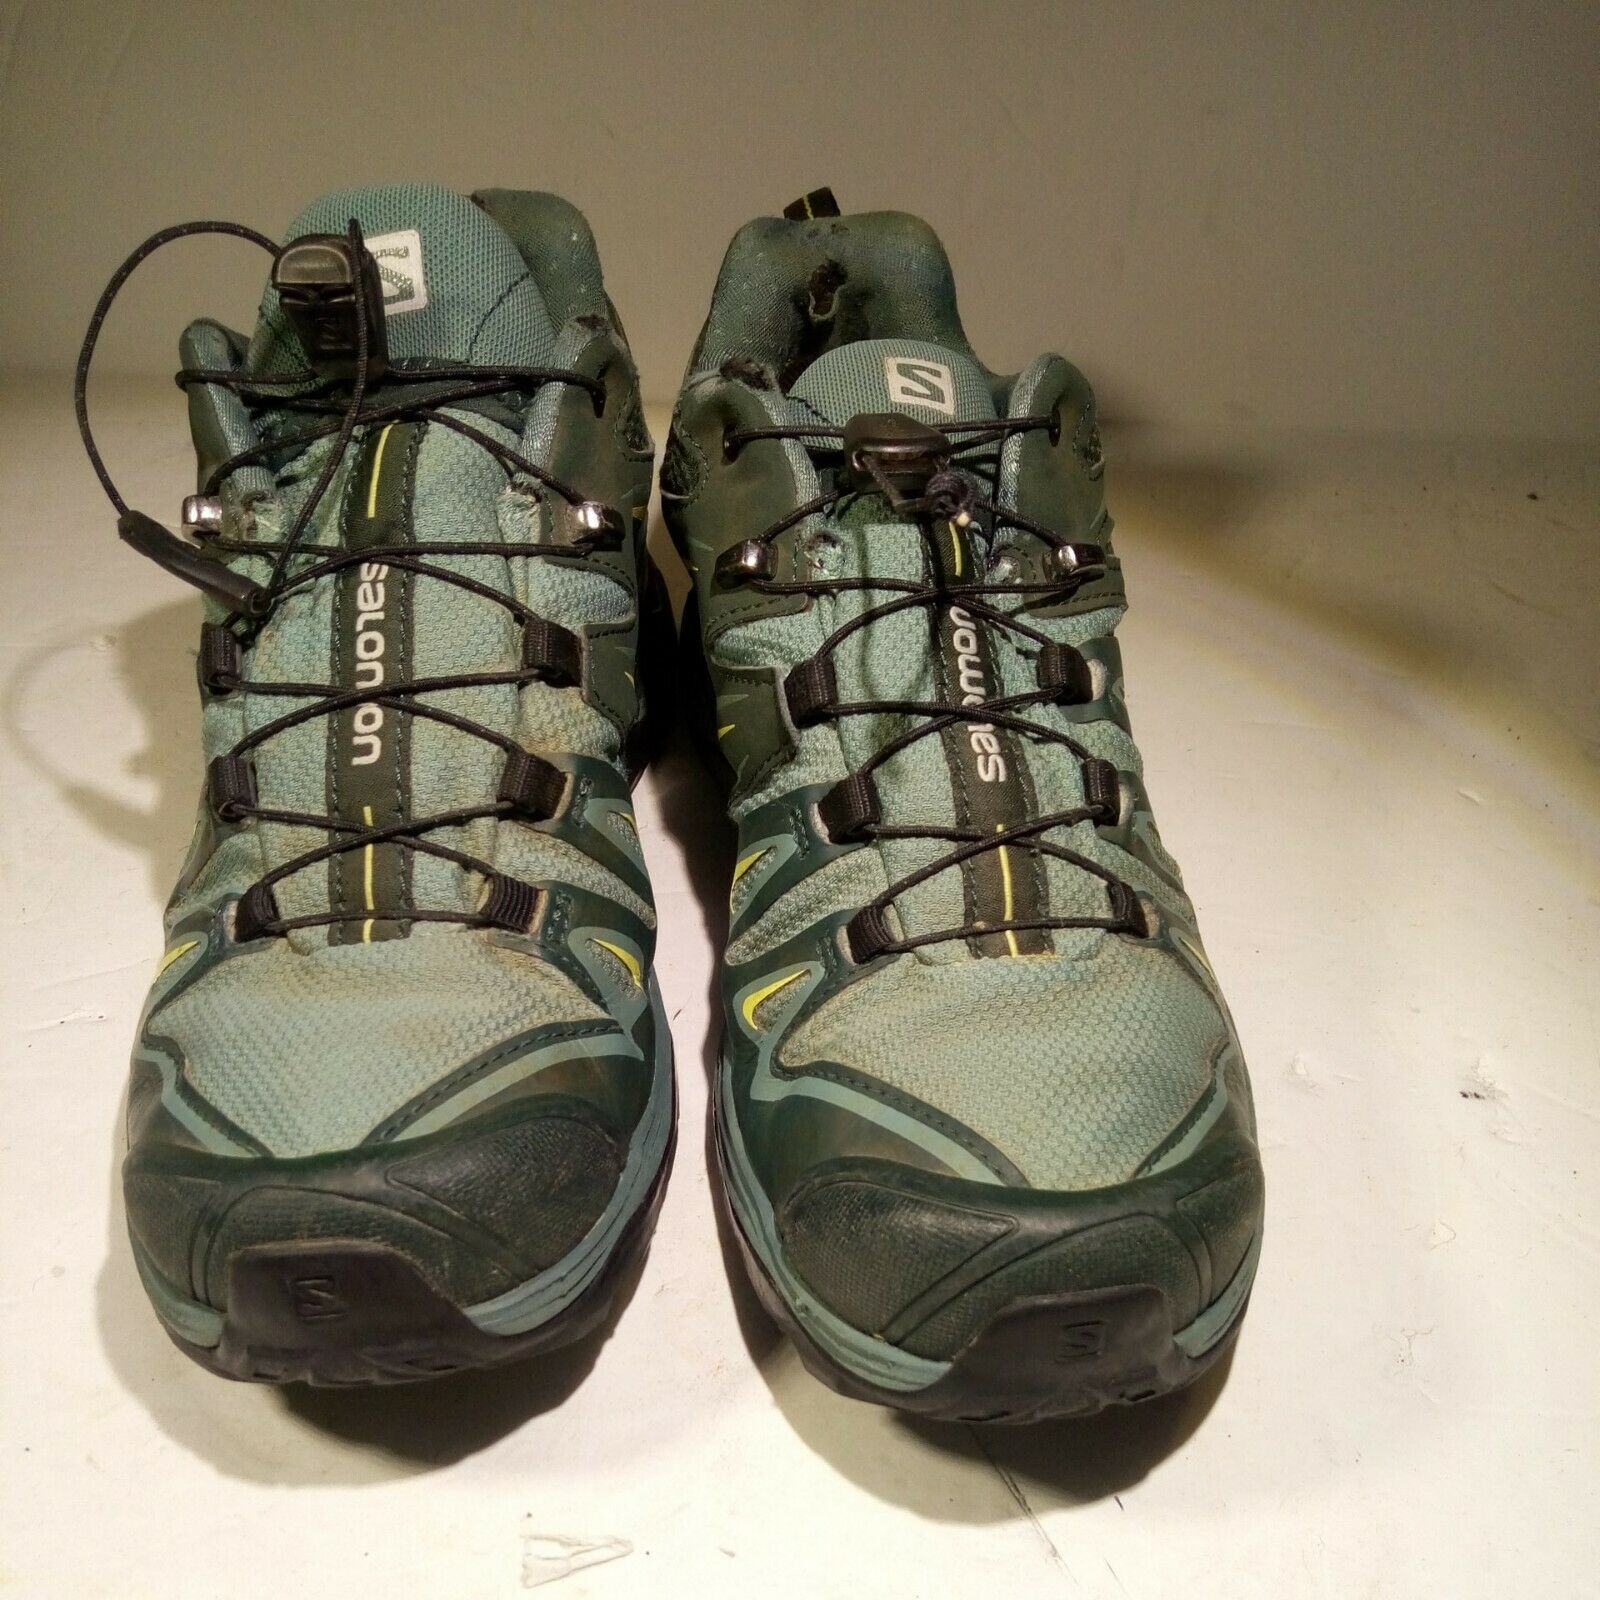 Salomon X Ultra Prime Trail Hiking Shoes women Sz 7.5 Gray Green Gore-Tex 400065